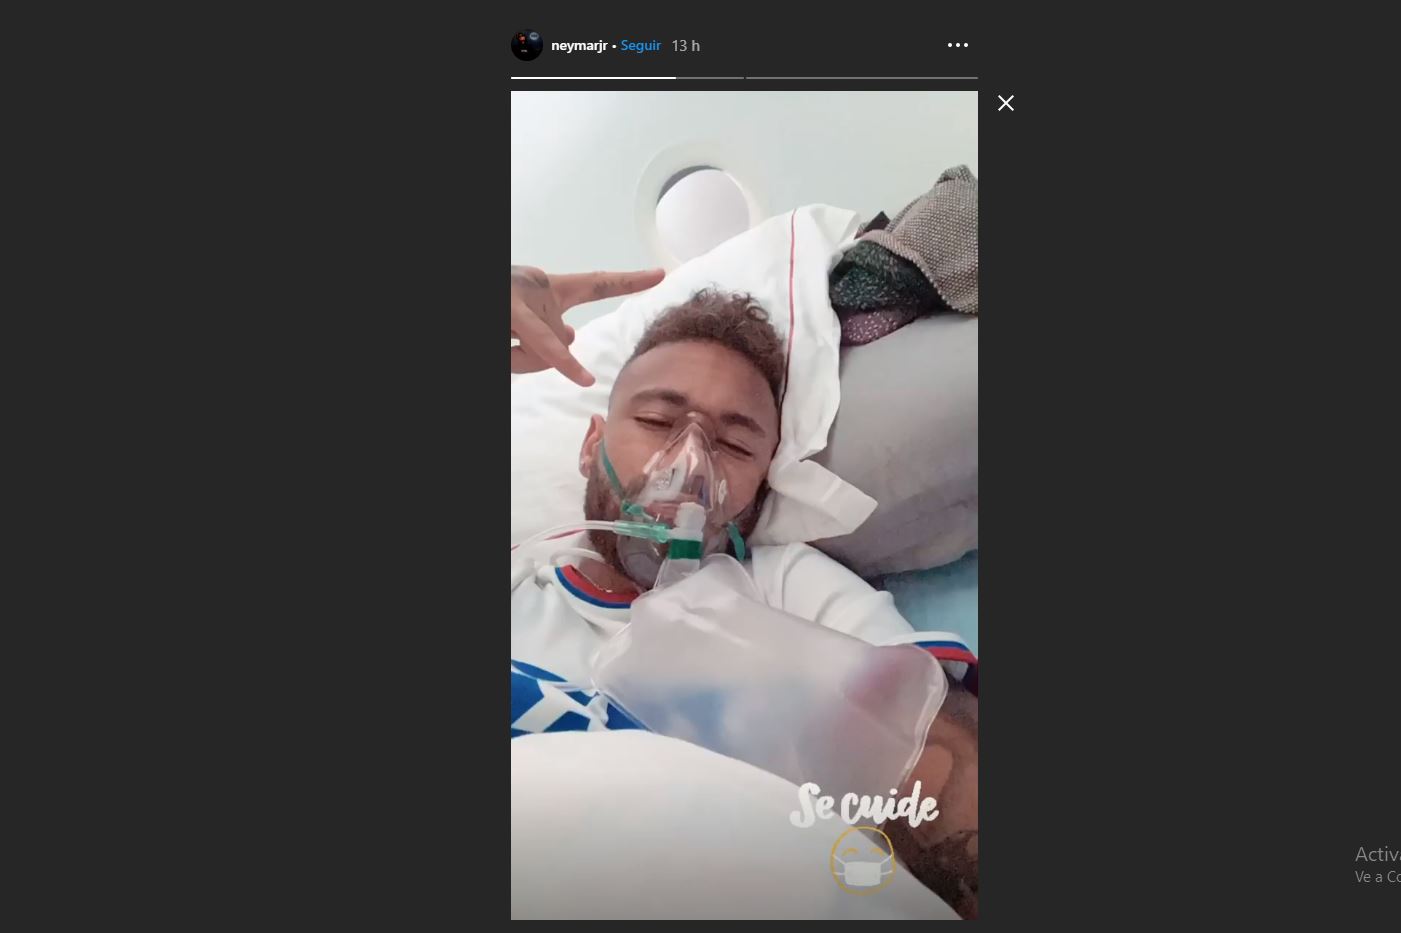 La historia de Instagram publicada por Neymar causó revuelo. (Foto Prensa Libre: Tomada del Instagram de Neymar)